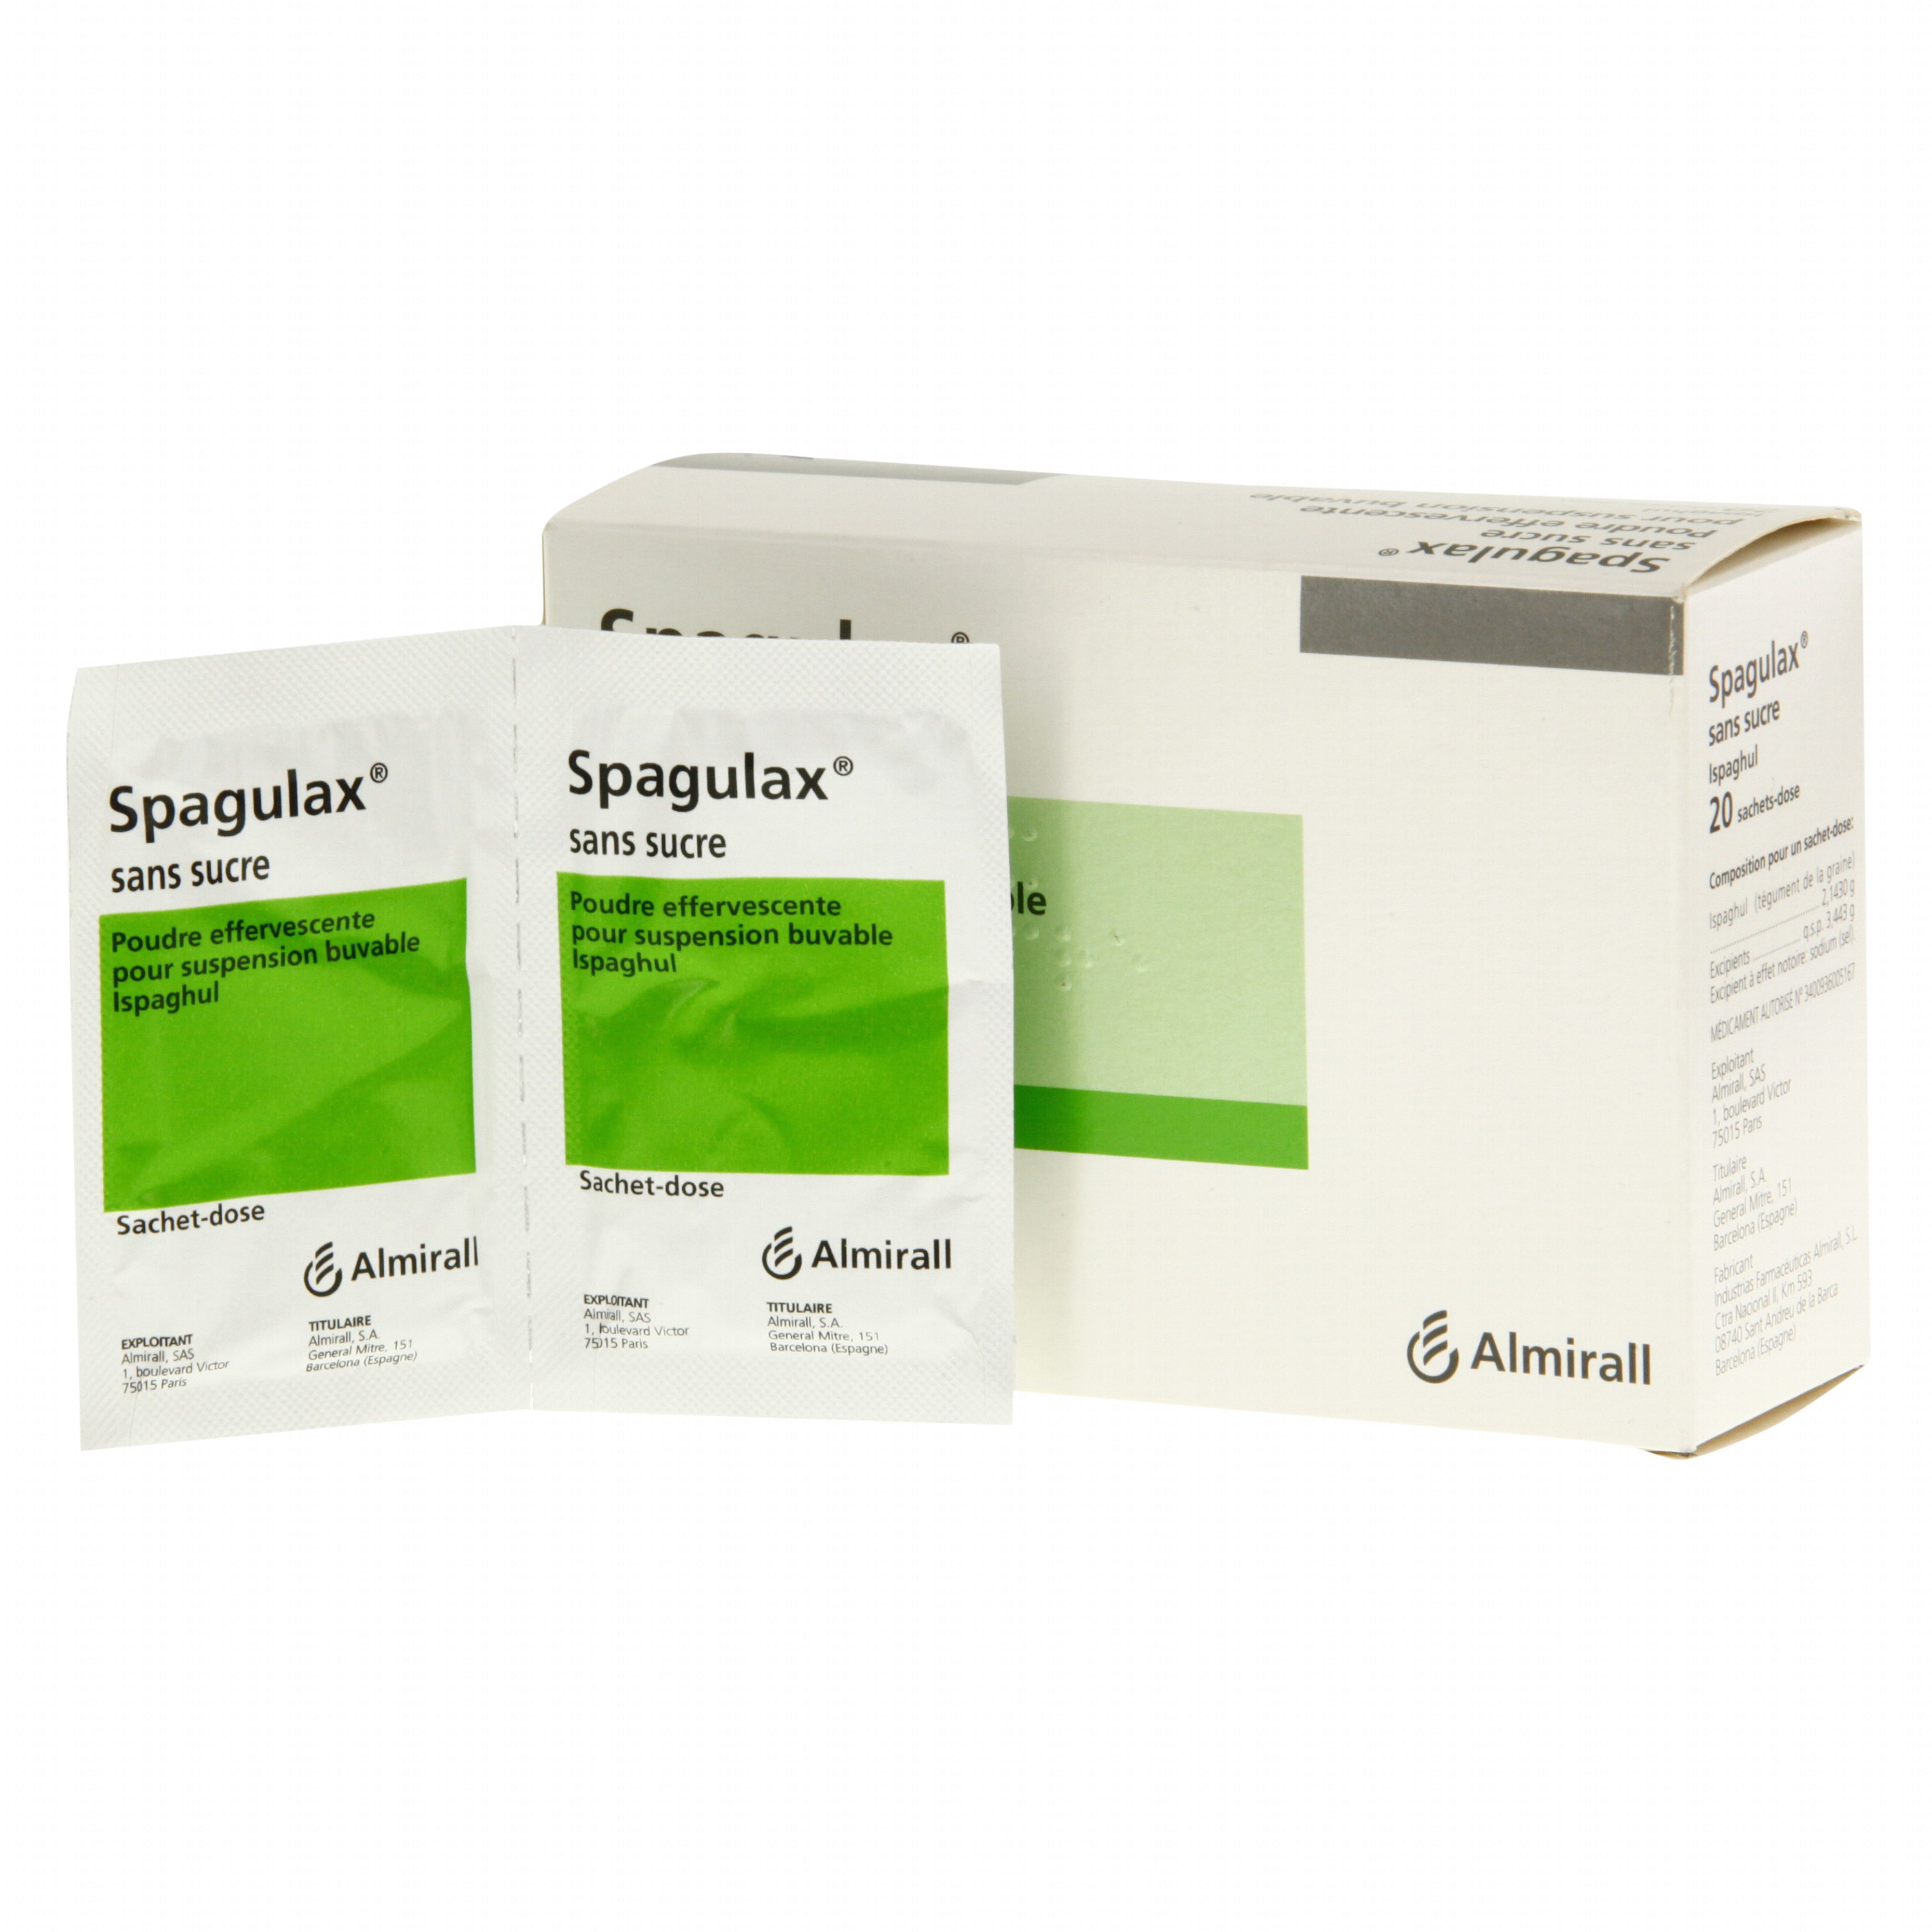 Spagulax sans sucre boîte de 20 sachets-doses Almirall ...